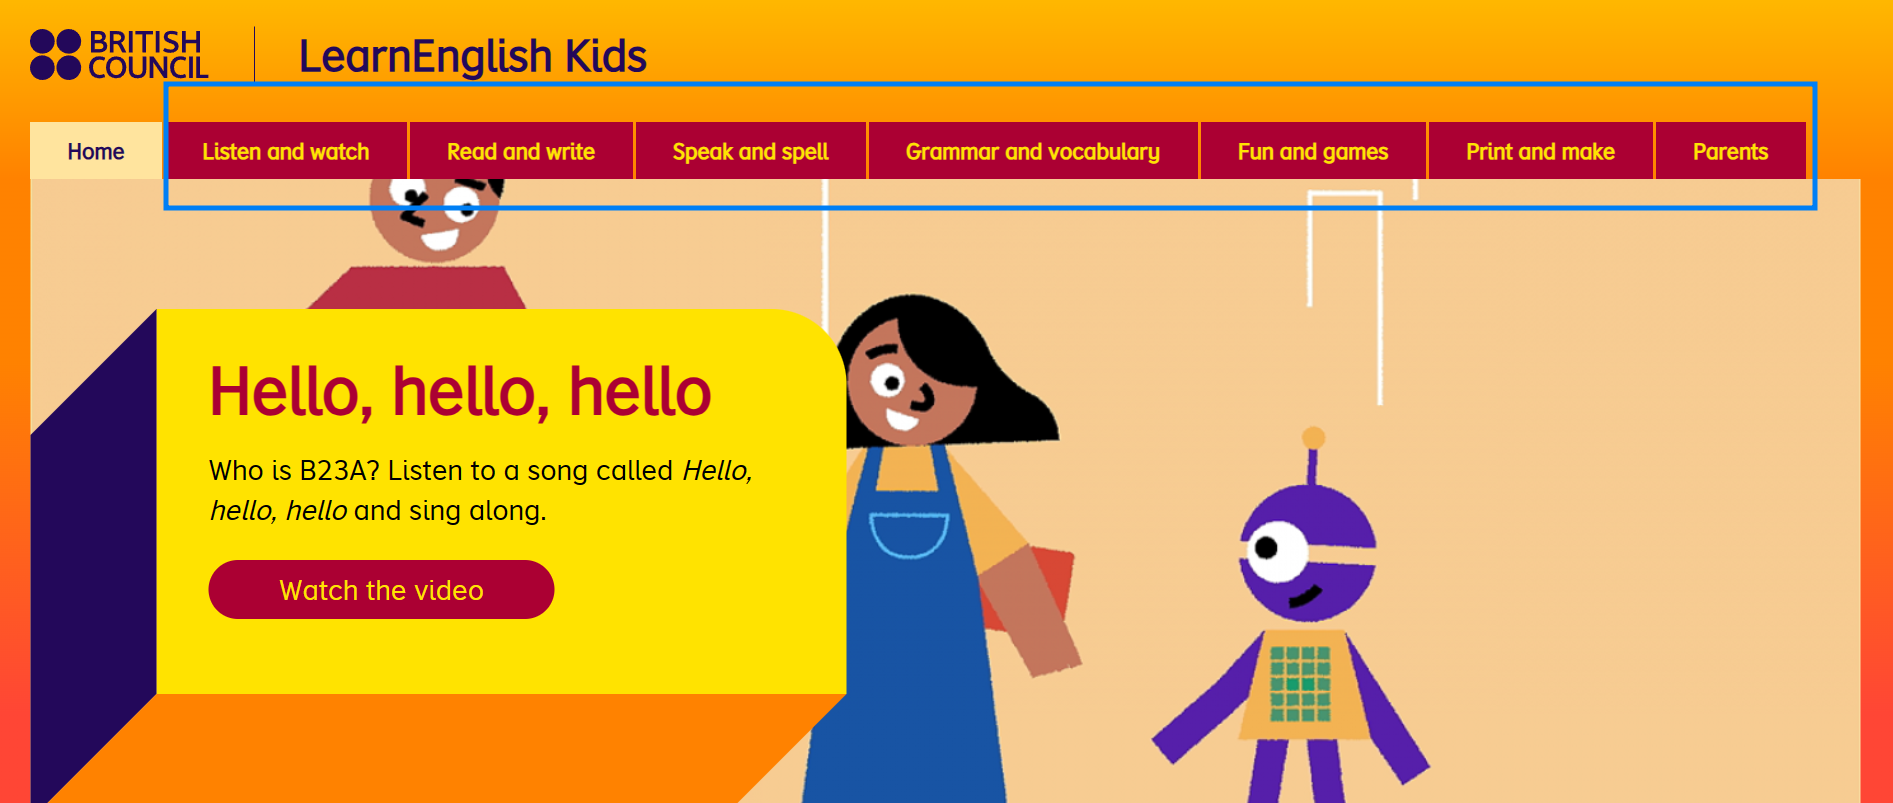 영국문화원 프로그램 Learn English Kids 홈페이지 화면